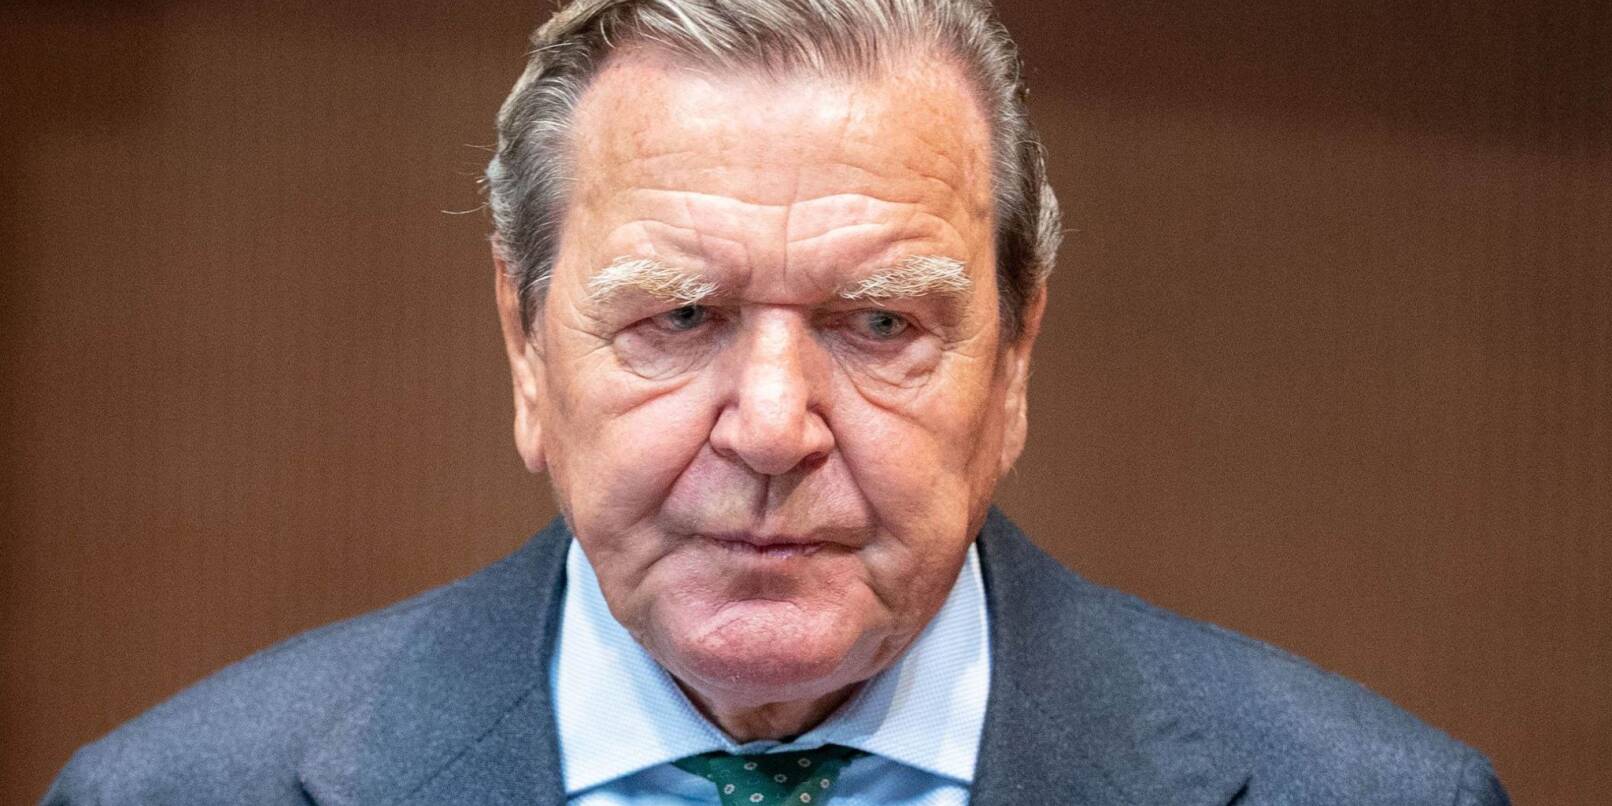 Altkanzler Gerhard Schröder steht wegen seiner Russland-Nähe in der Kritik.